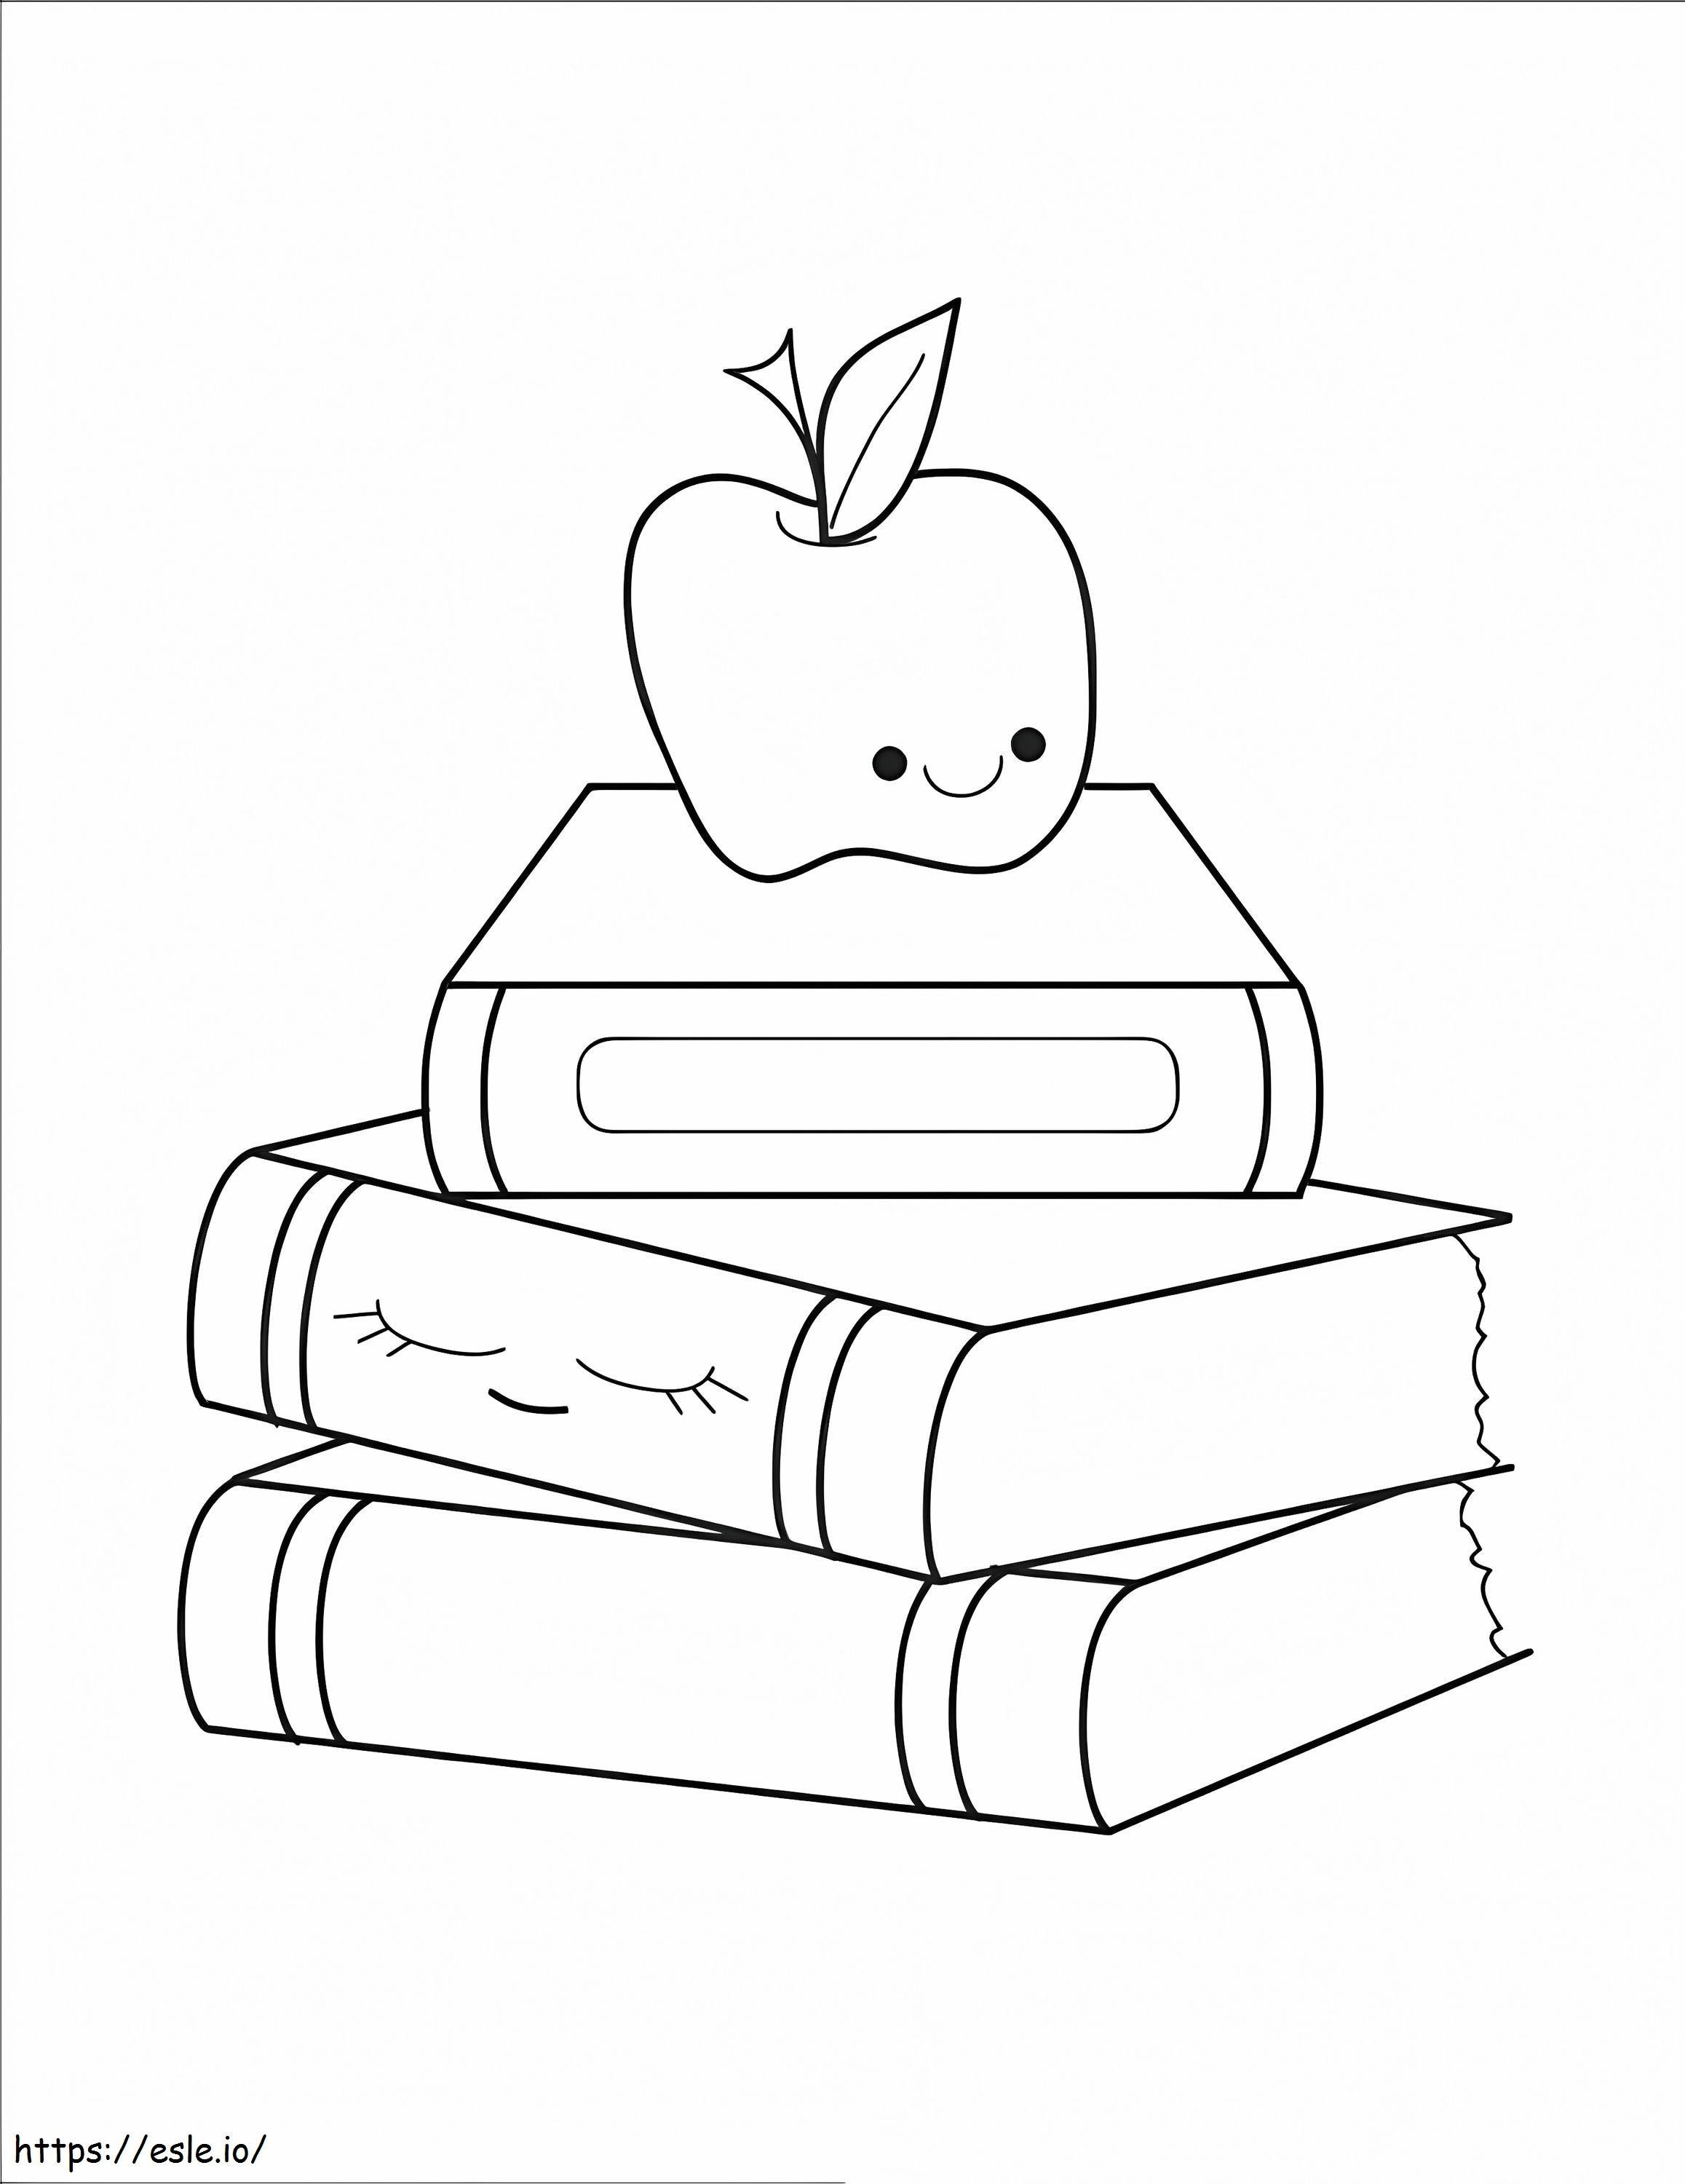 Apple en dos libros de regreso a clases para colorear